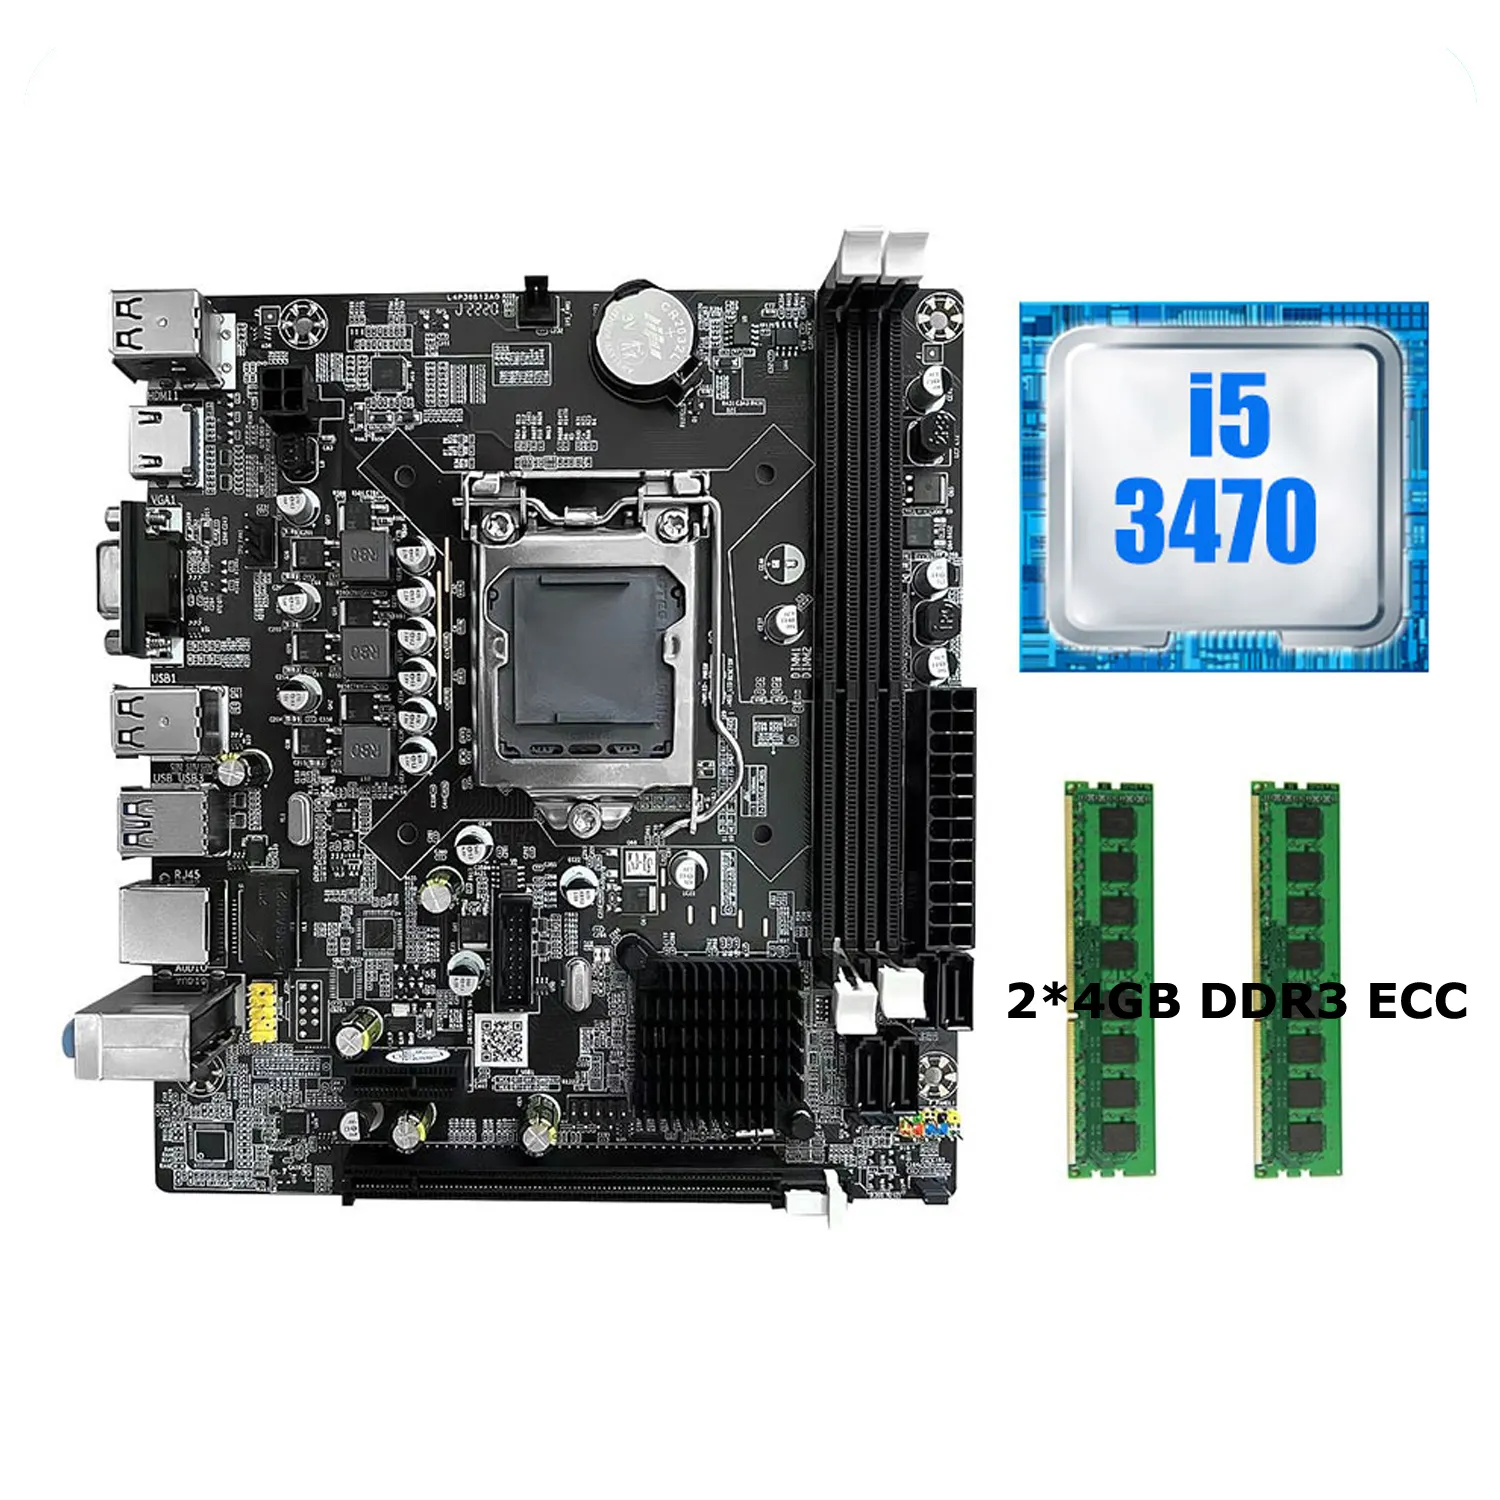 Интегрированная видеокарта H61 материнская плата LGA 1155 Материнская плата набор с I5 3470 CPU и DDR3 4 ГБ * 2 шт. 1600 МГц памяти